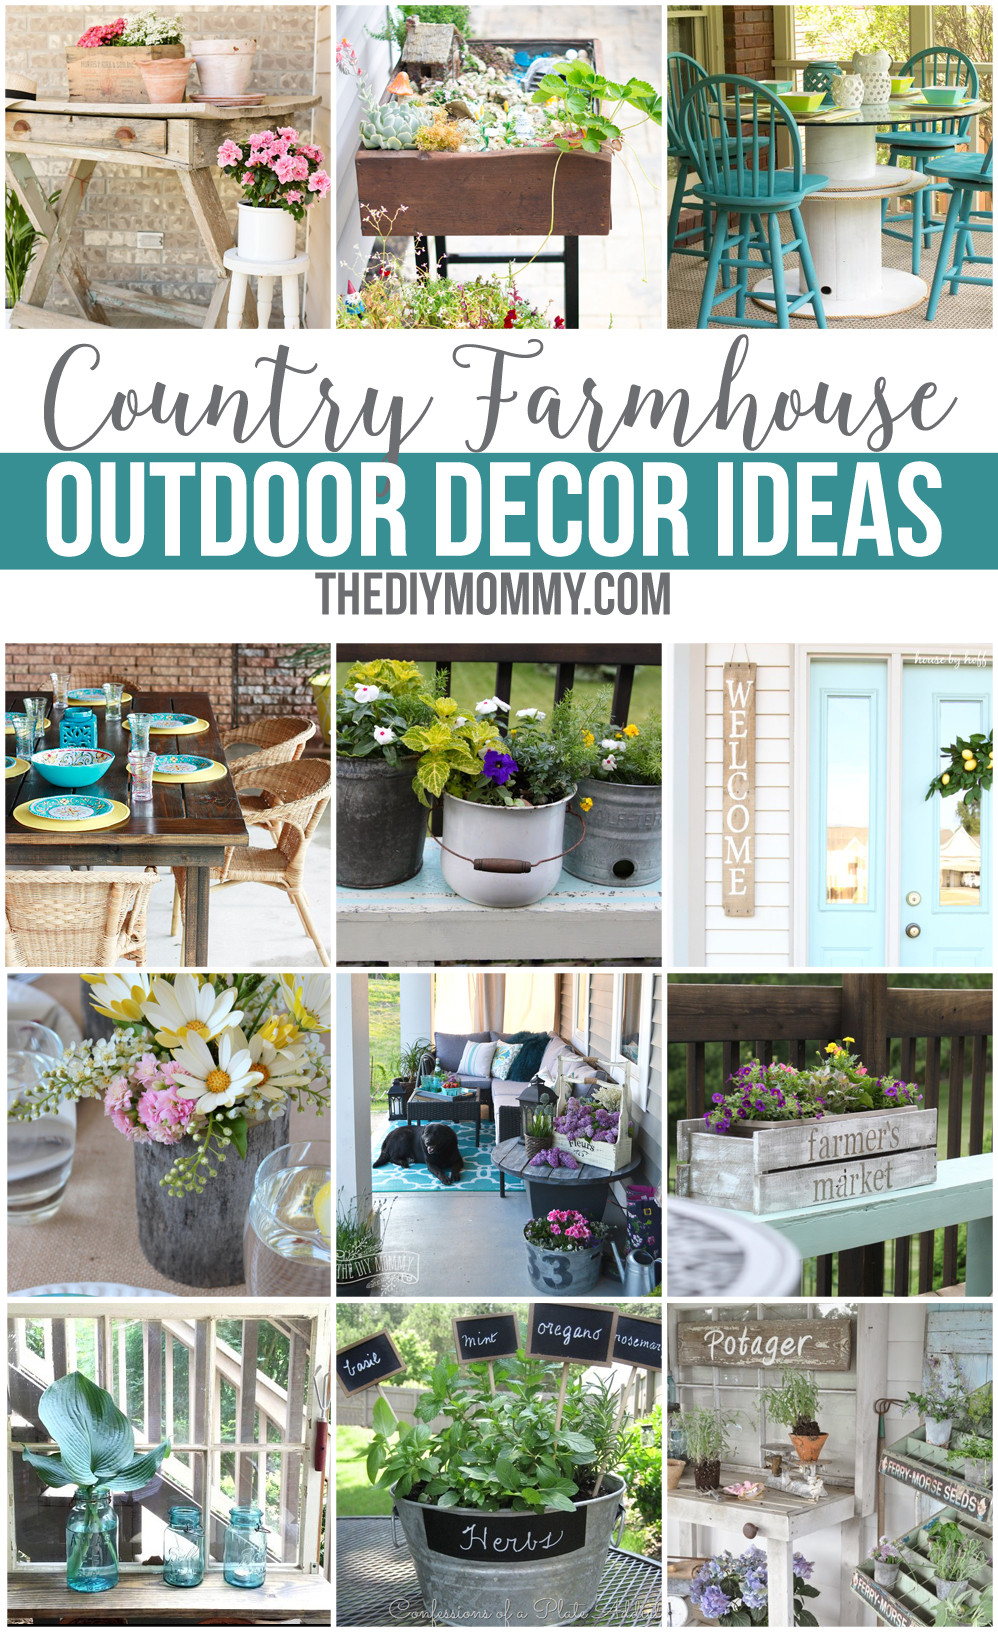 DIY Outdoor Decor
 12 Gorgeous Country Farmhouse Outdoor Décor Ideas